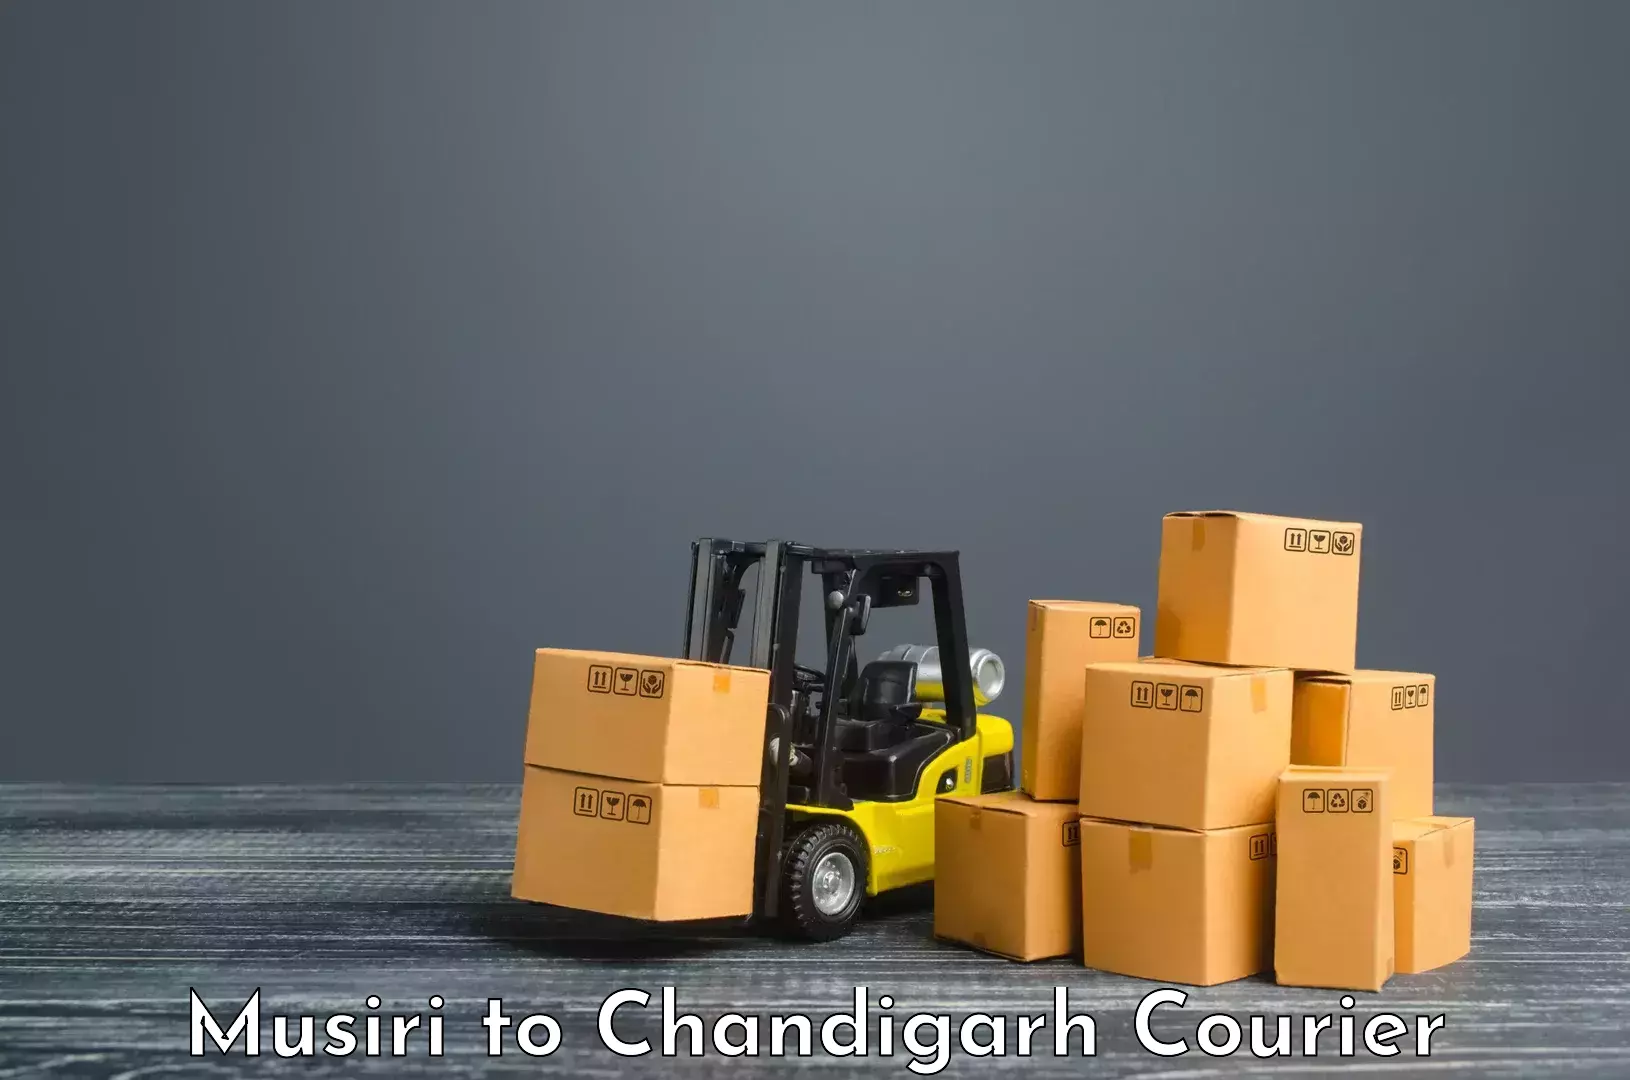 Advanced shipping technology Musiri to Chandigarh